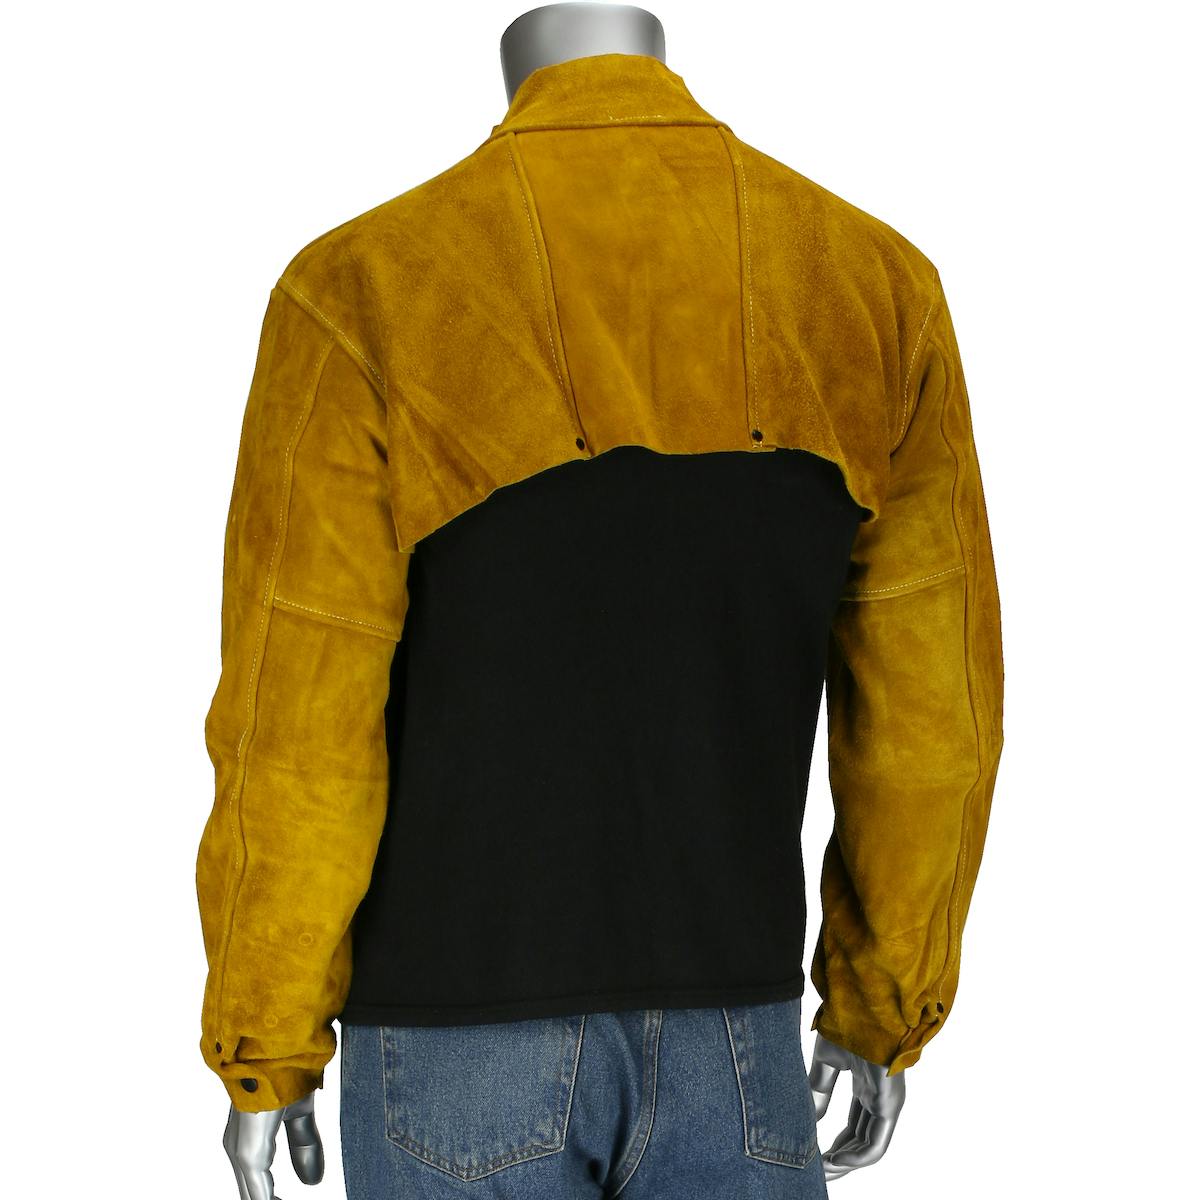 Ironcat® Ironcat® Split Leather Welding Cape Sleeve (7000)